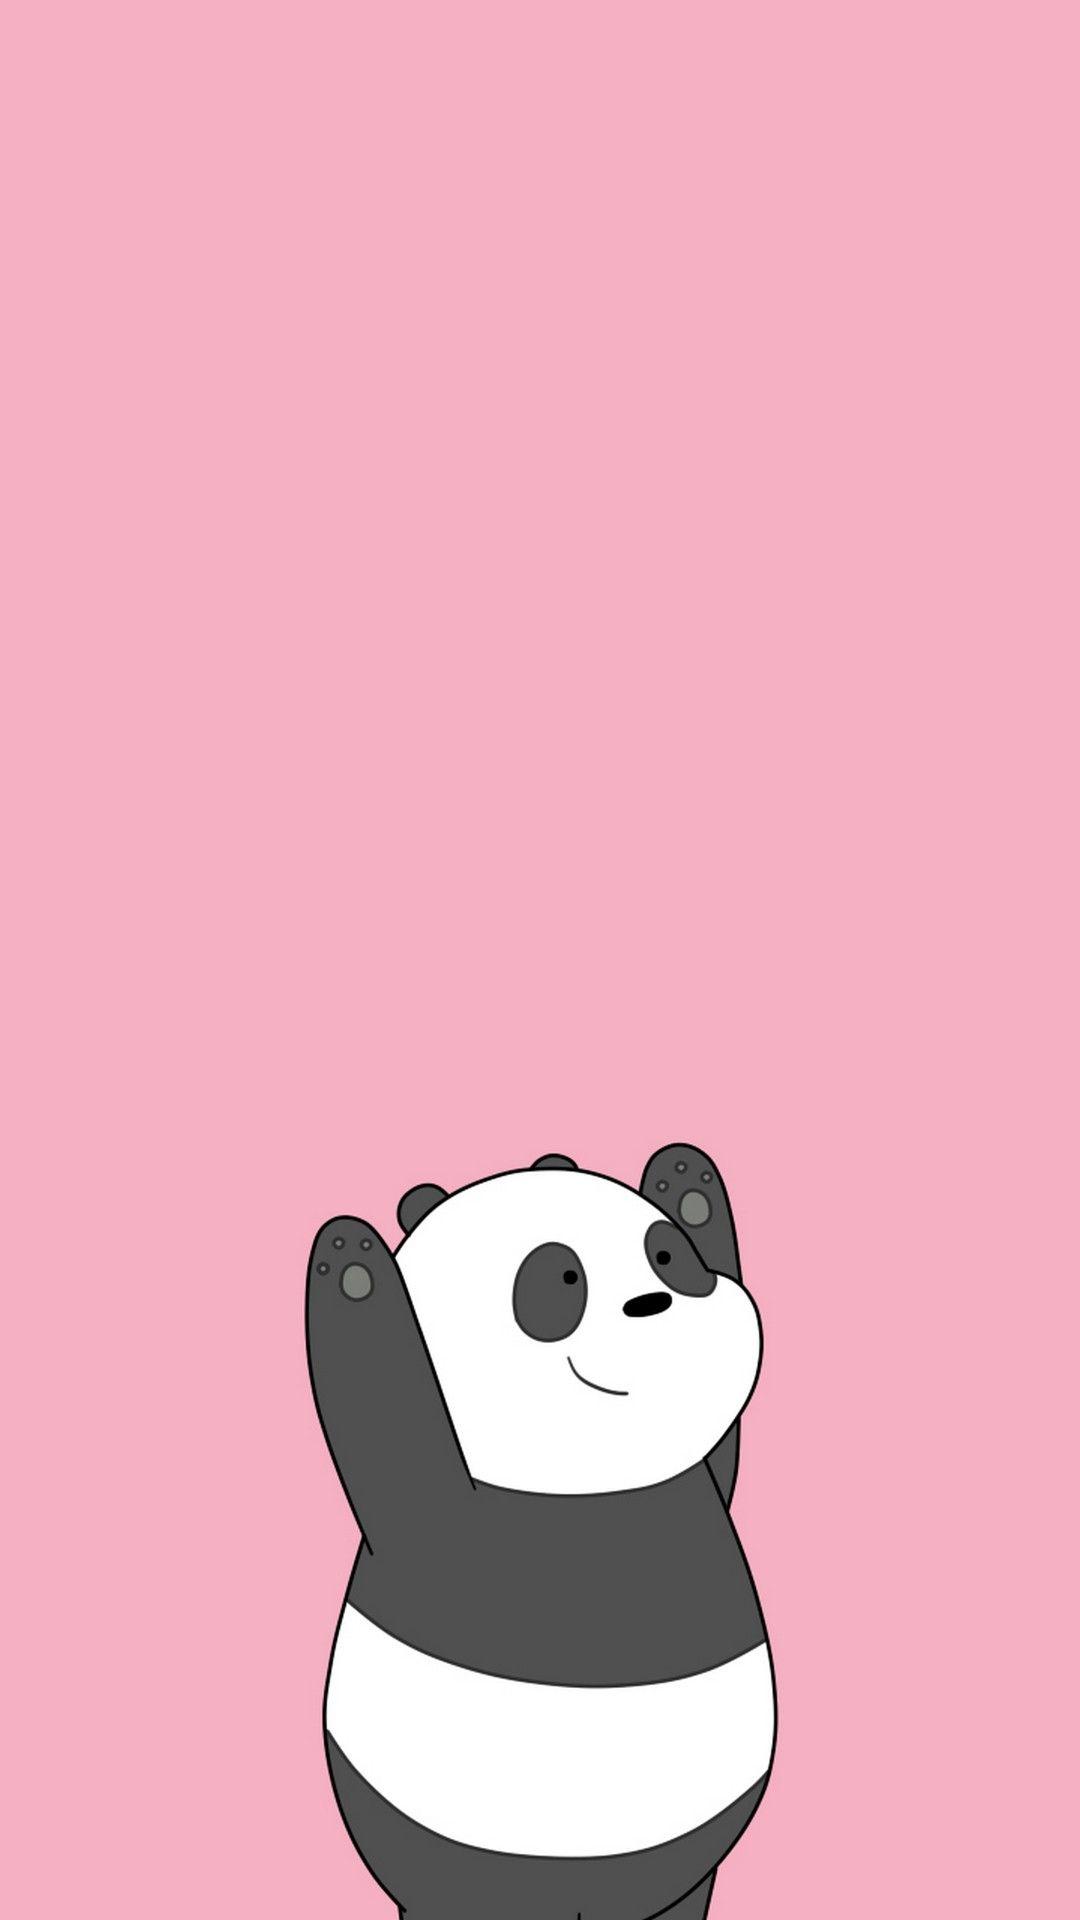 Cute Cartoon Panda Wallpapers Top Free Cute Cartoon Panda Backgrounds Wallpaperaccess